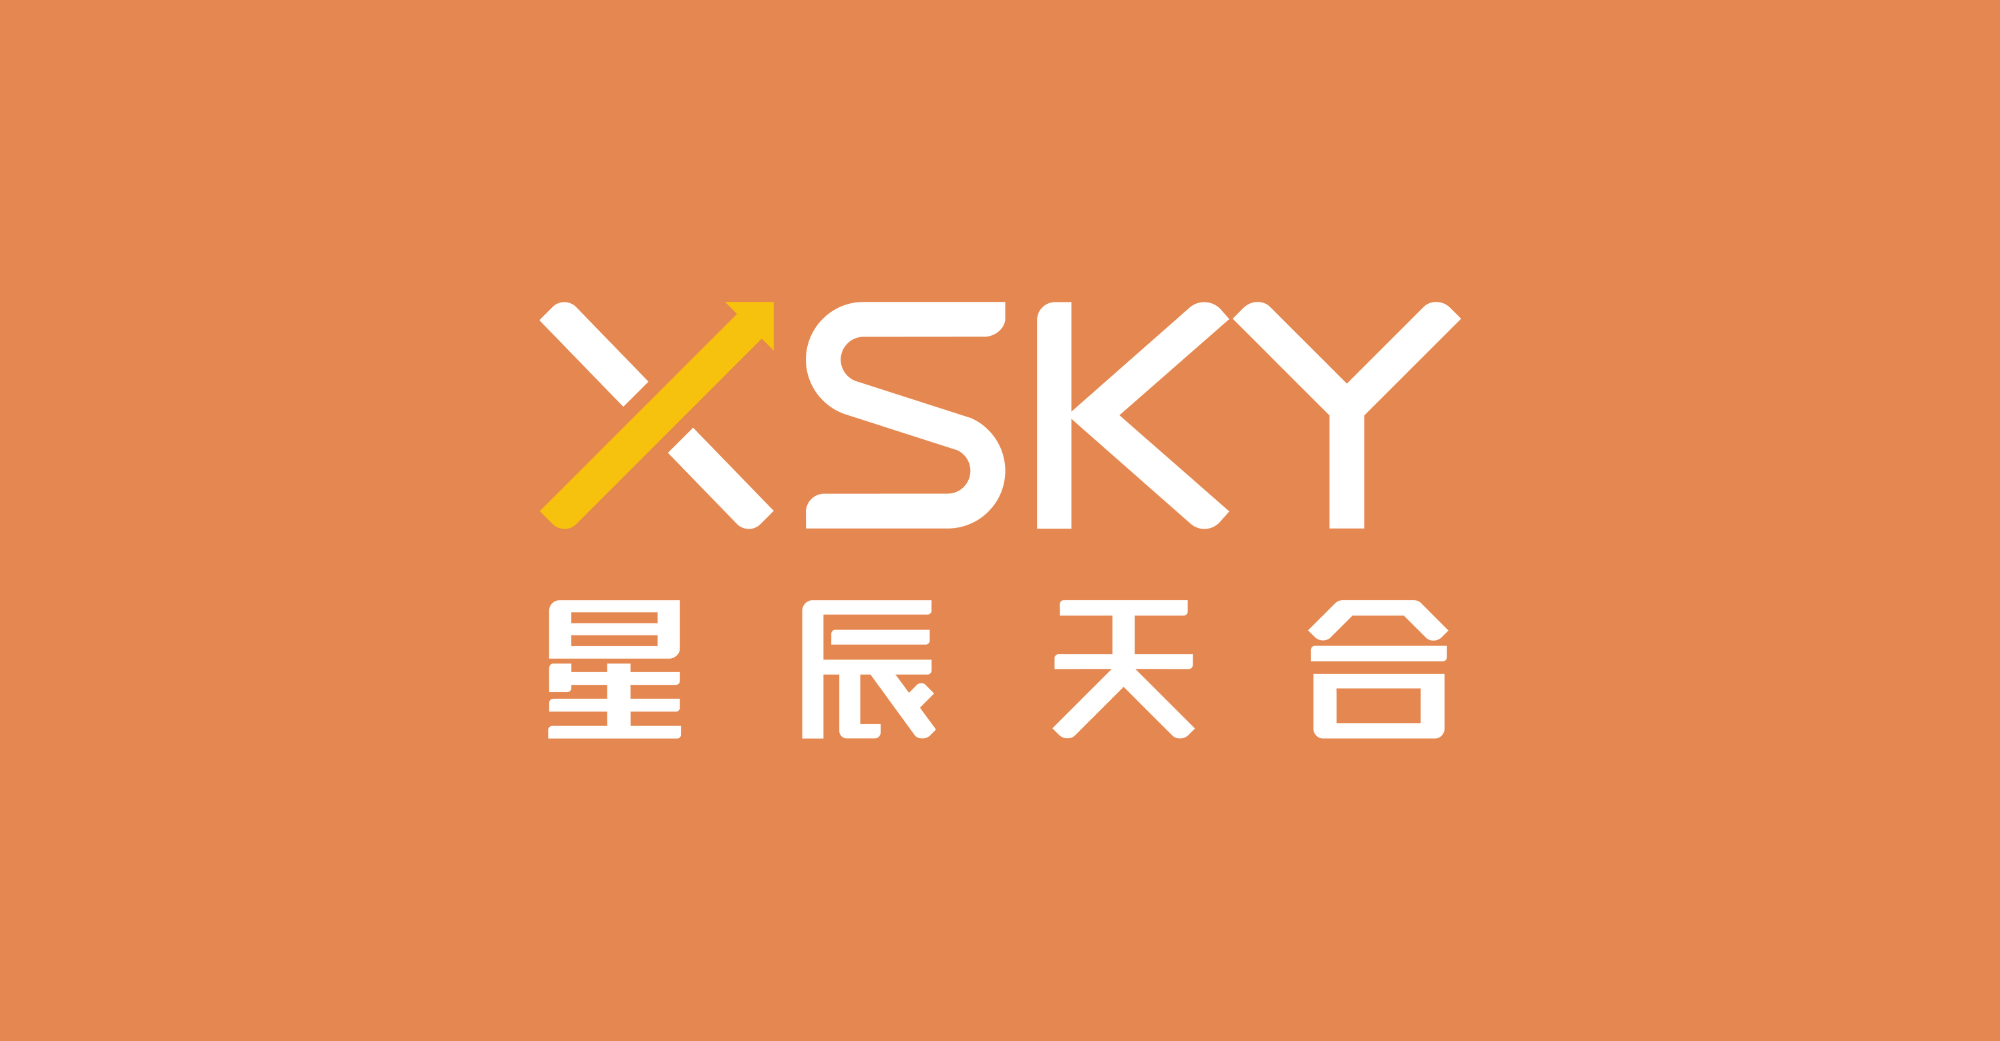 XSKY ได้รับเงิน 62.8 ล้านเหรียญสหรัฐในการระดมทุนรอบ F โดยมี Source Capital เข้าร่วม